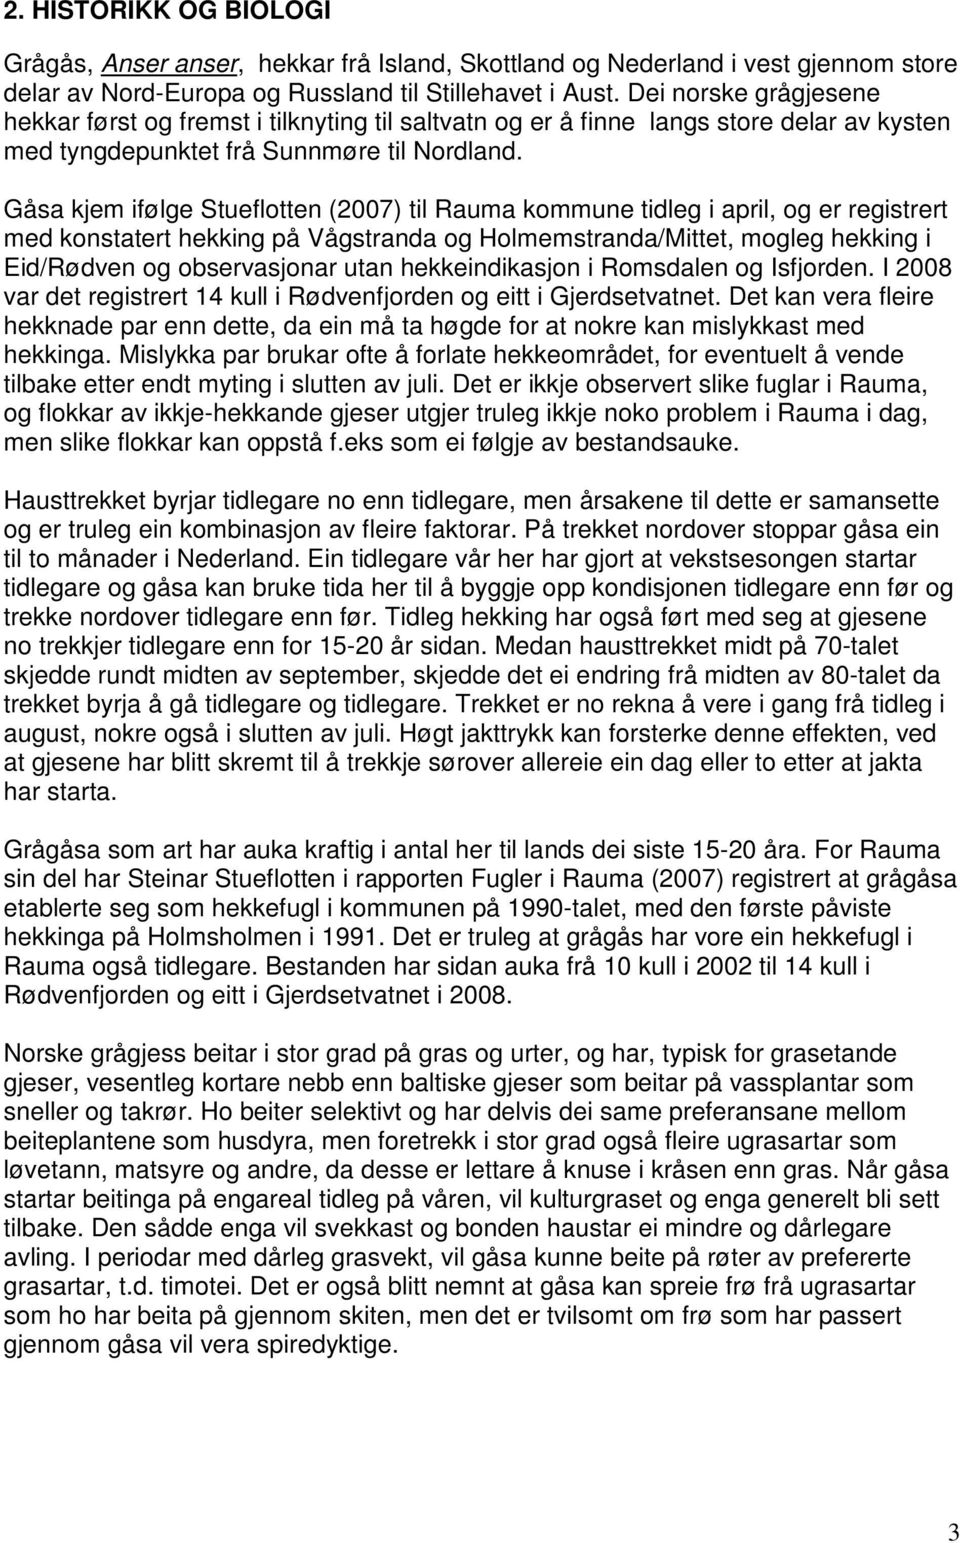 Gåsa kjem ifølge Stueflotten (2007) til Rauma kommune tidleg i april, og er registrert med konstatert hekking på Vågstranda og Holmemstranda/Mittet, mogleg hekking i Eid/Rødven og observasjonar utan